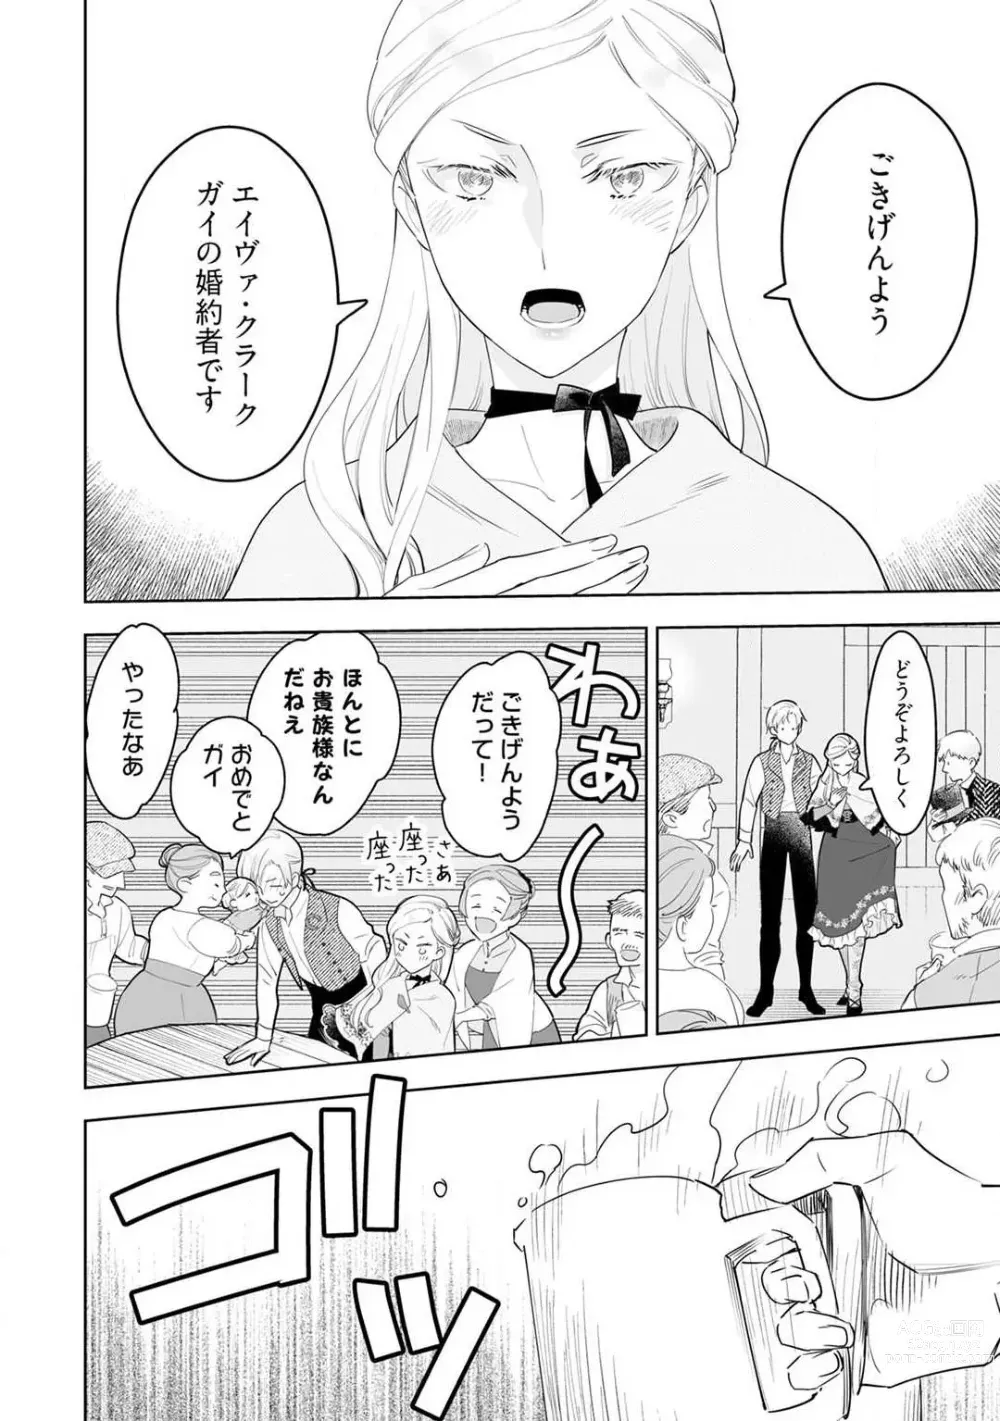 Page 271 of manga Konyaku Hakisareta Akuyaku Reijou, Ikemen Shisanka ni Kyuukonsaremashita. 1-9